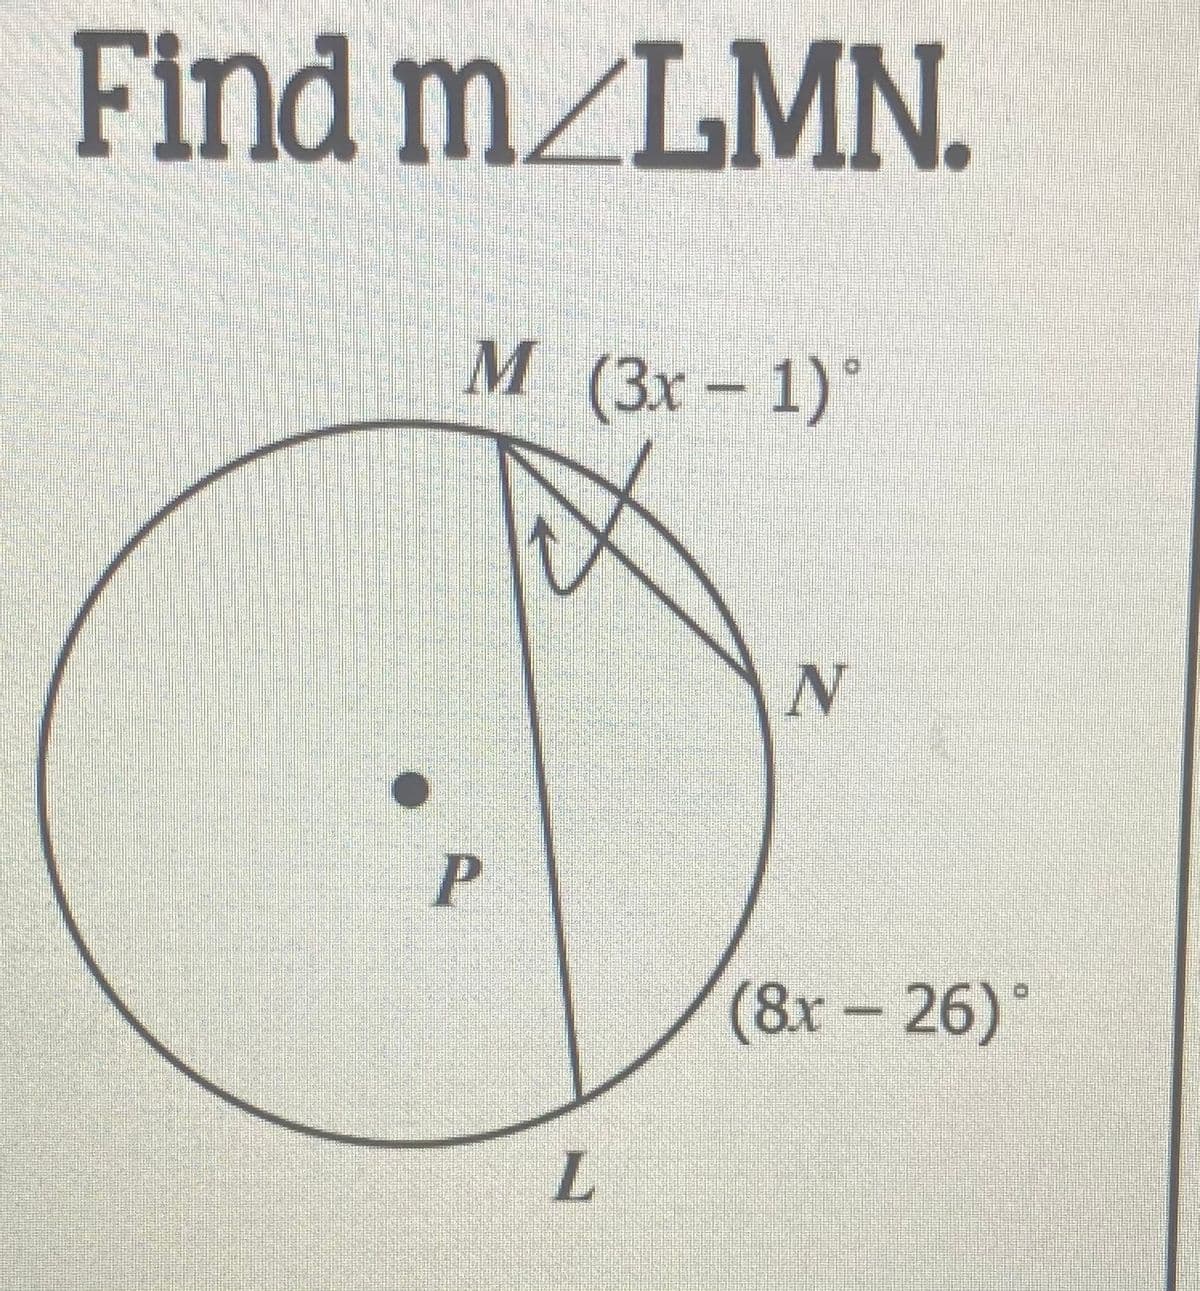 Find m_LMN.
М (3х - 1)°
N
P
(8x- 26)°
L.
